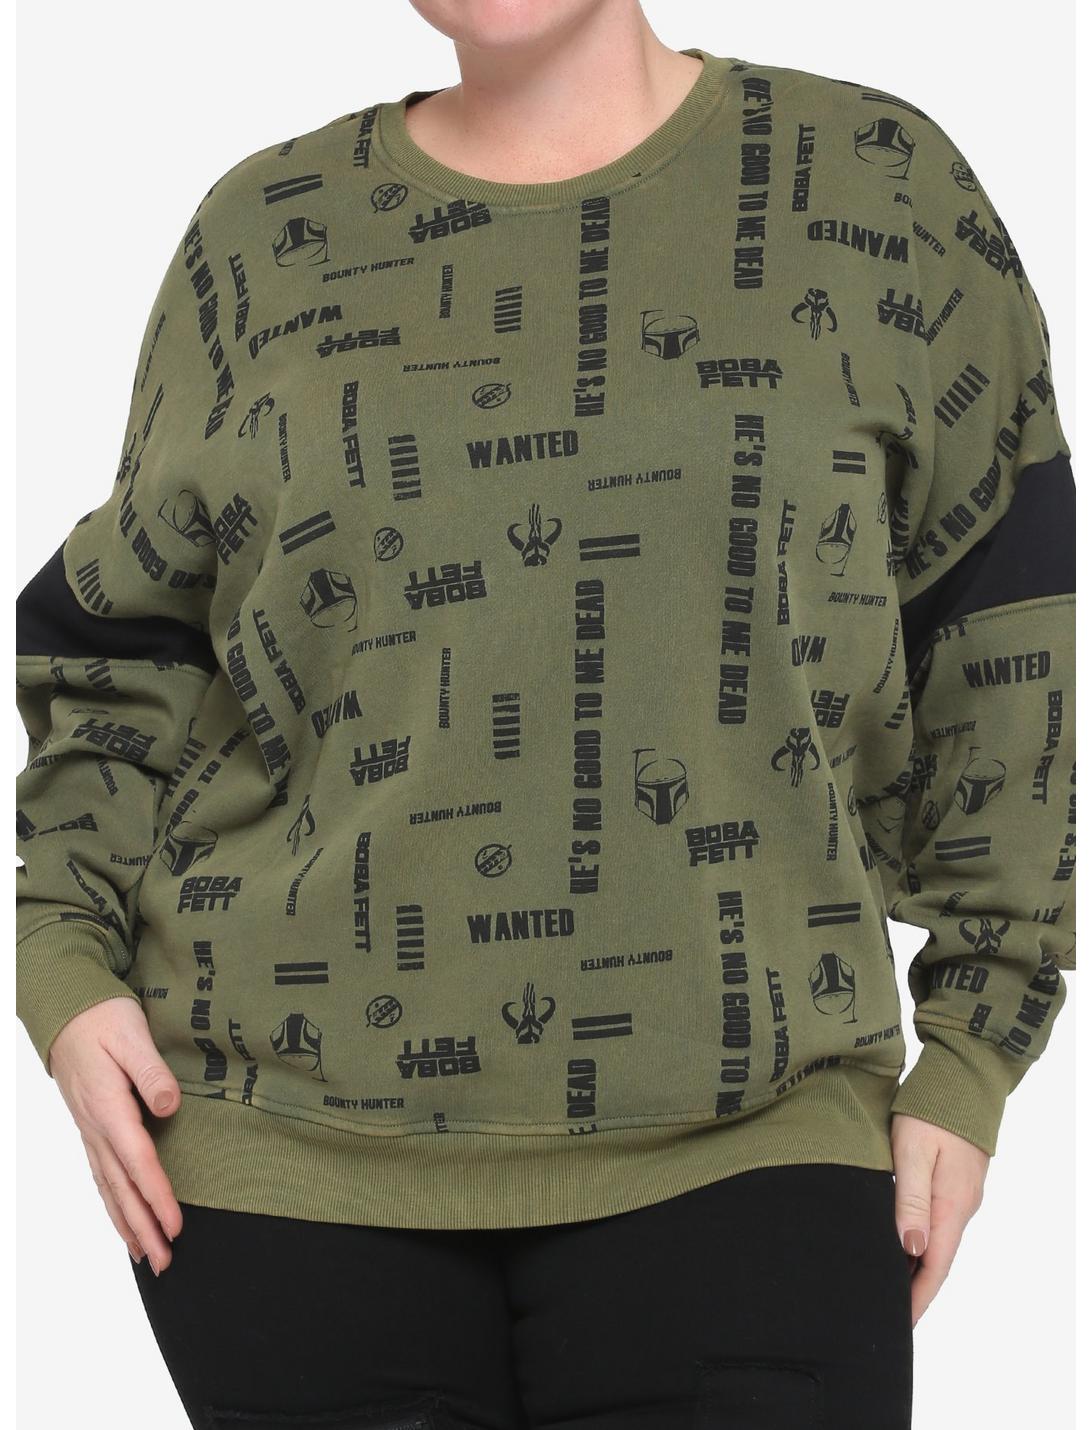 Her Universe Star Wars Boba Fett Logos Girls Sweatshirt Plus Size, BLACK, hi-res